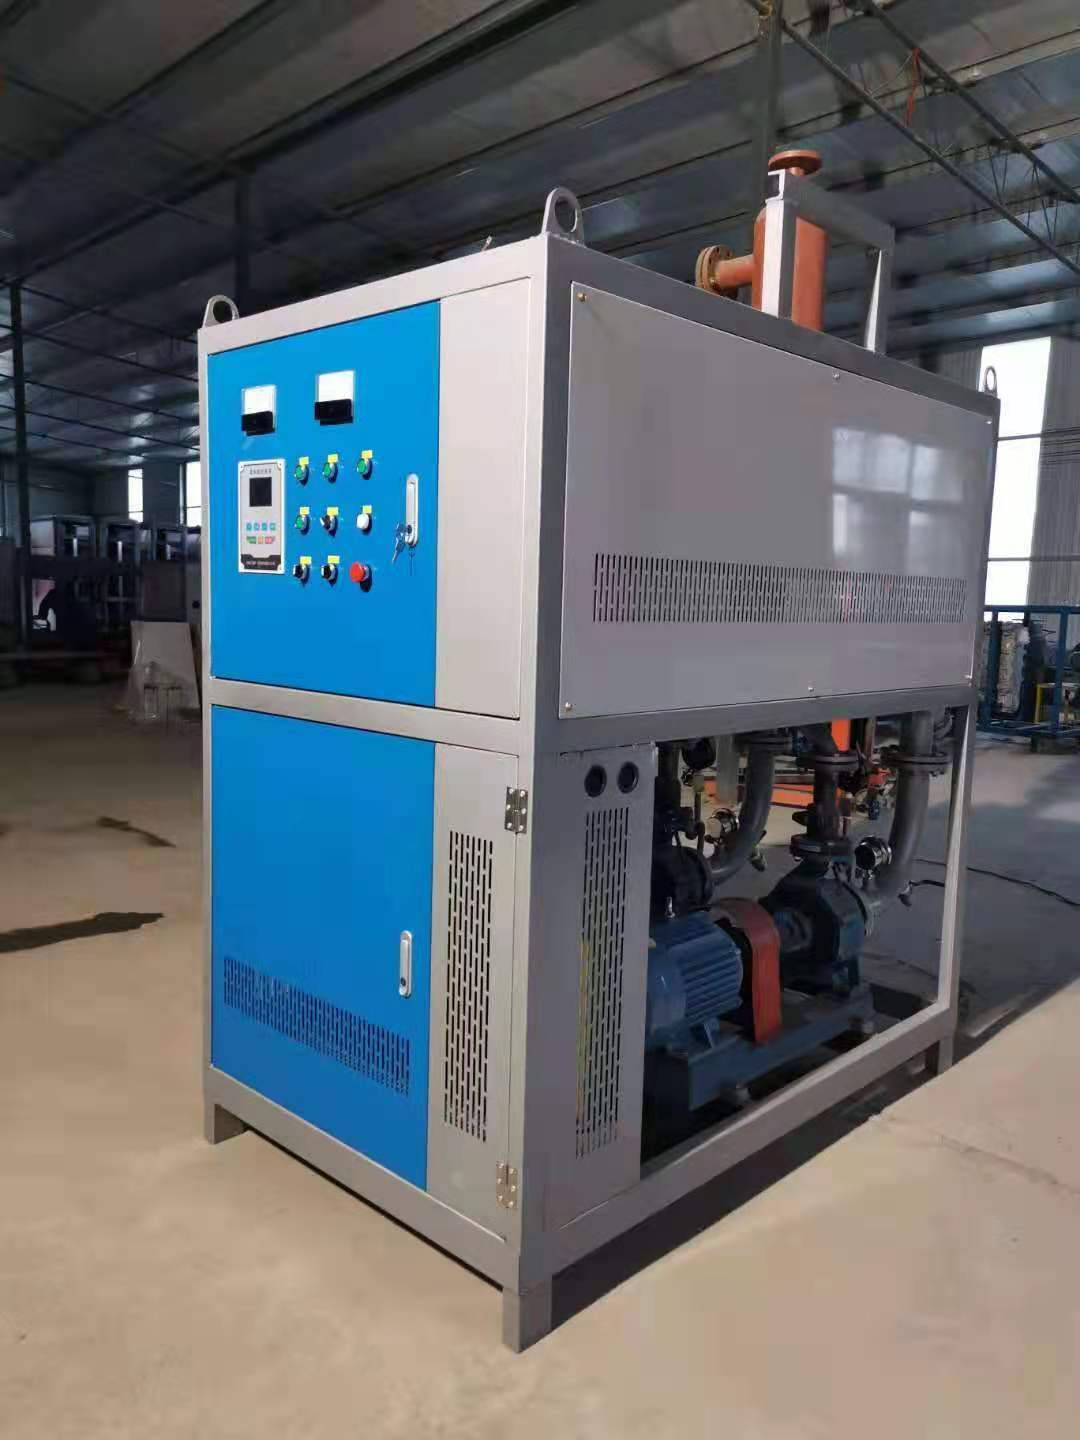 山东电磁加热导热油炉生产厂家560KW600KW700KW720KW电磁加热导热油炉